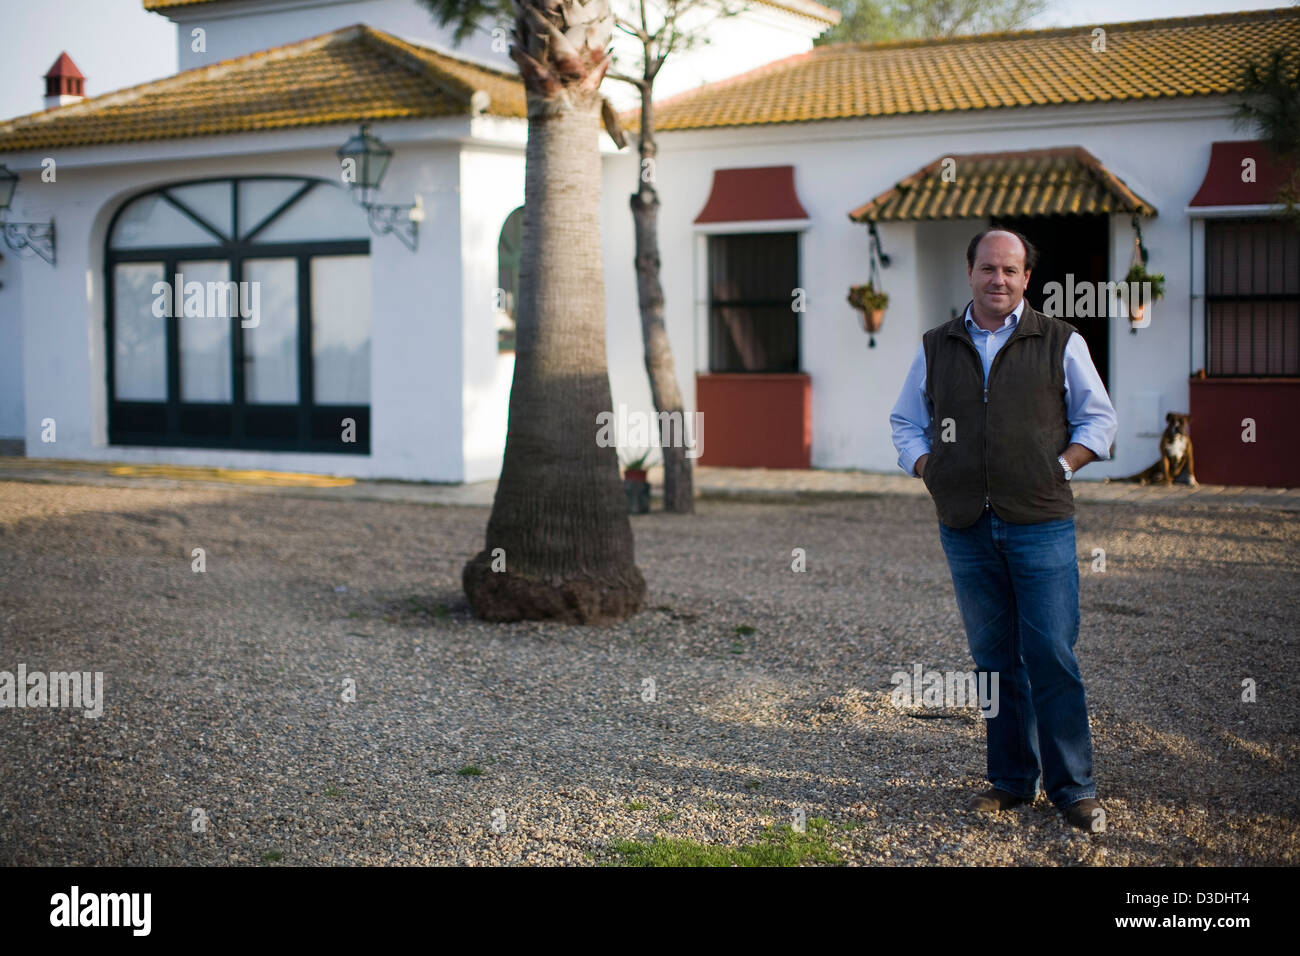 Serinyà, Séville, ESPAGNE, LE 25 FÉVRIER 2008 : Jose Luis ALgorra, gestionnaire de Partido de Resina, se dresse en face de sa maison, dans le parc du ranch. Le ranch s'appelait Pablo-Romero après la famille qui en était propriétaire et était célèbre pour sa très forte et agressif avec un taureaux gris distinctif appelé 'couleur' Cardeno. Après plusieurs années de déclin, les nouveaux propriétaires, un groupe d'hommes d'affaires, s'emploient à faire revivre l'ancienne lignée de l' 'Cardeno taureaux. Banque D'Images